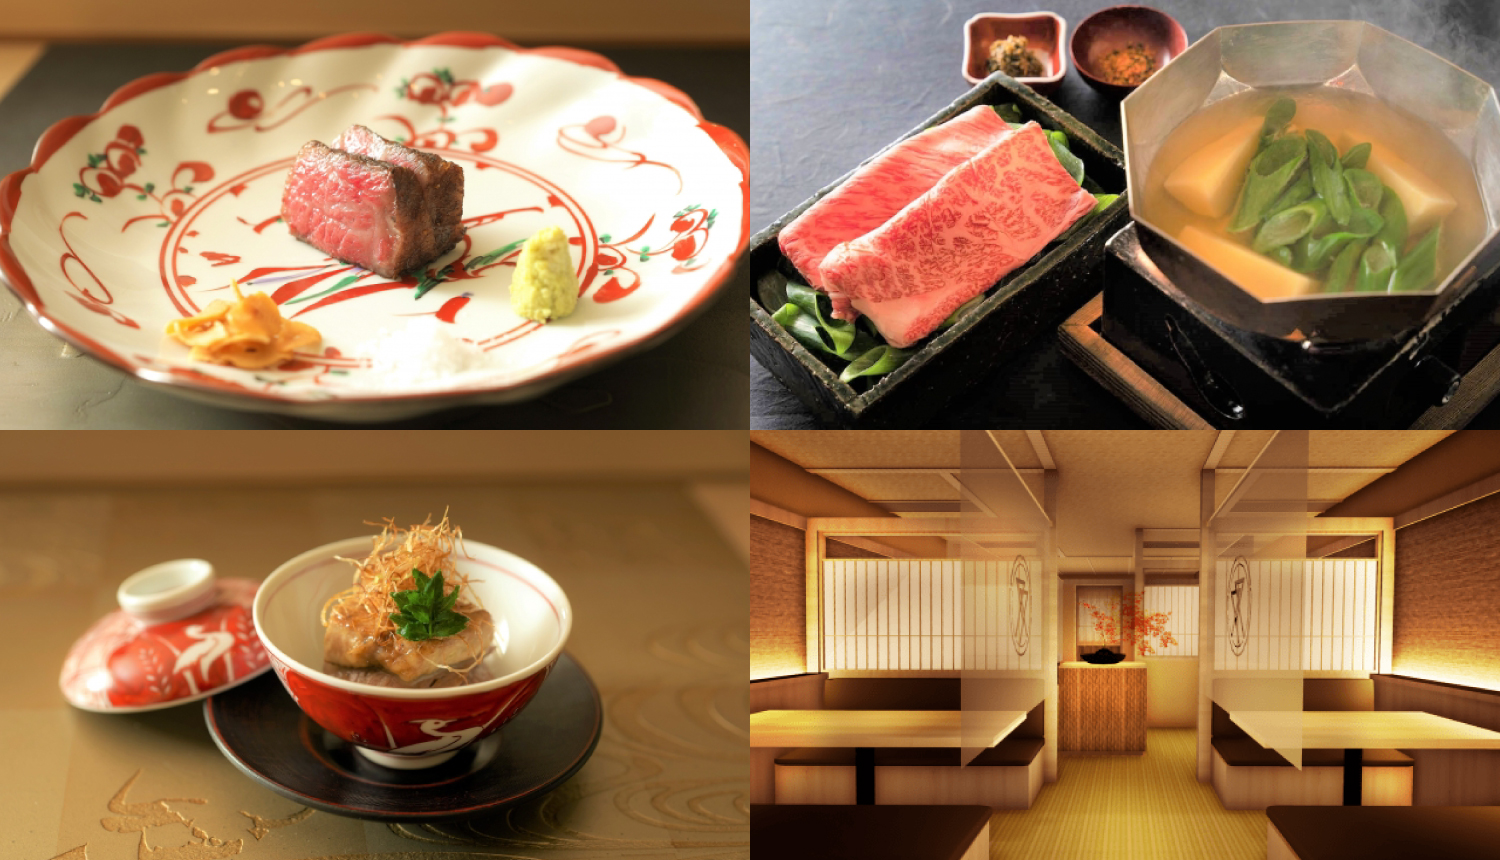 人気焼肉店 ふたご が京都 東山に肉づくしのコースを提供する 肉割烹ふたご オープン Moshi Moshi Nippon もしもしにっぽん